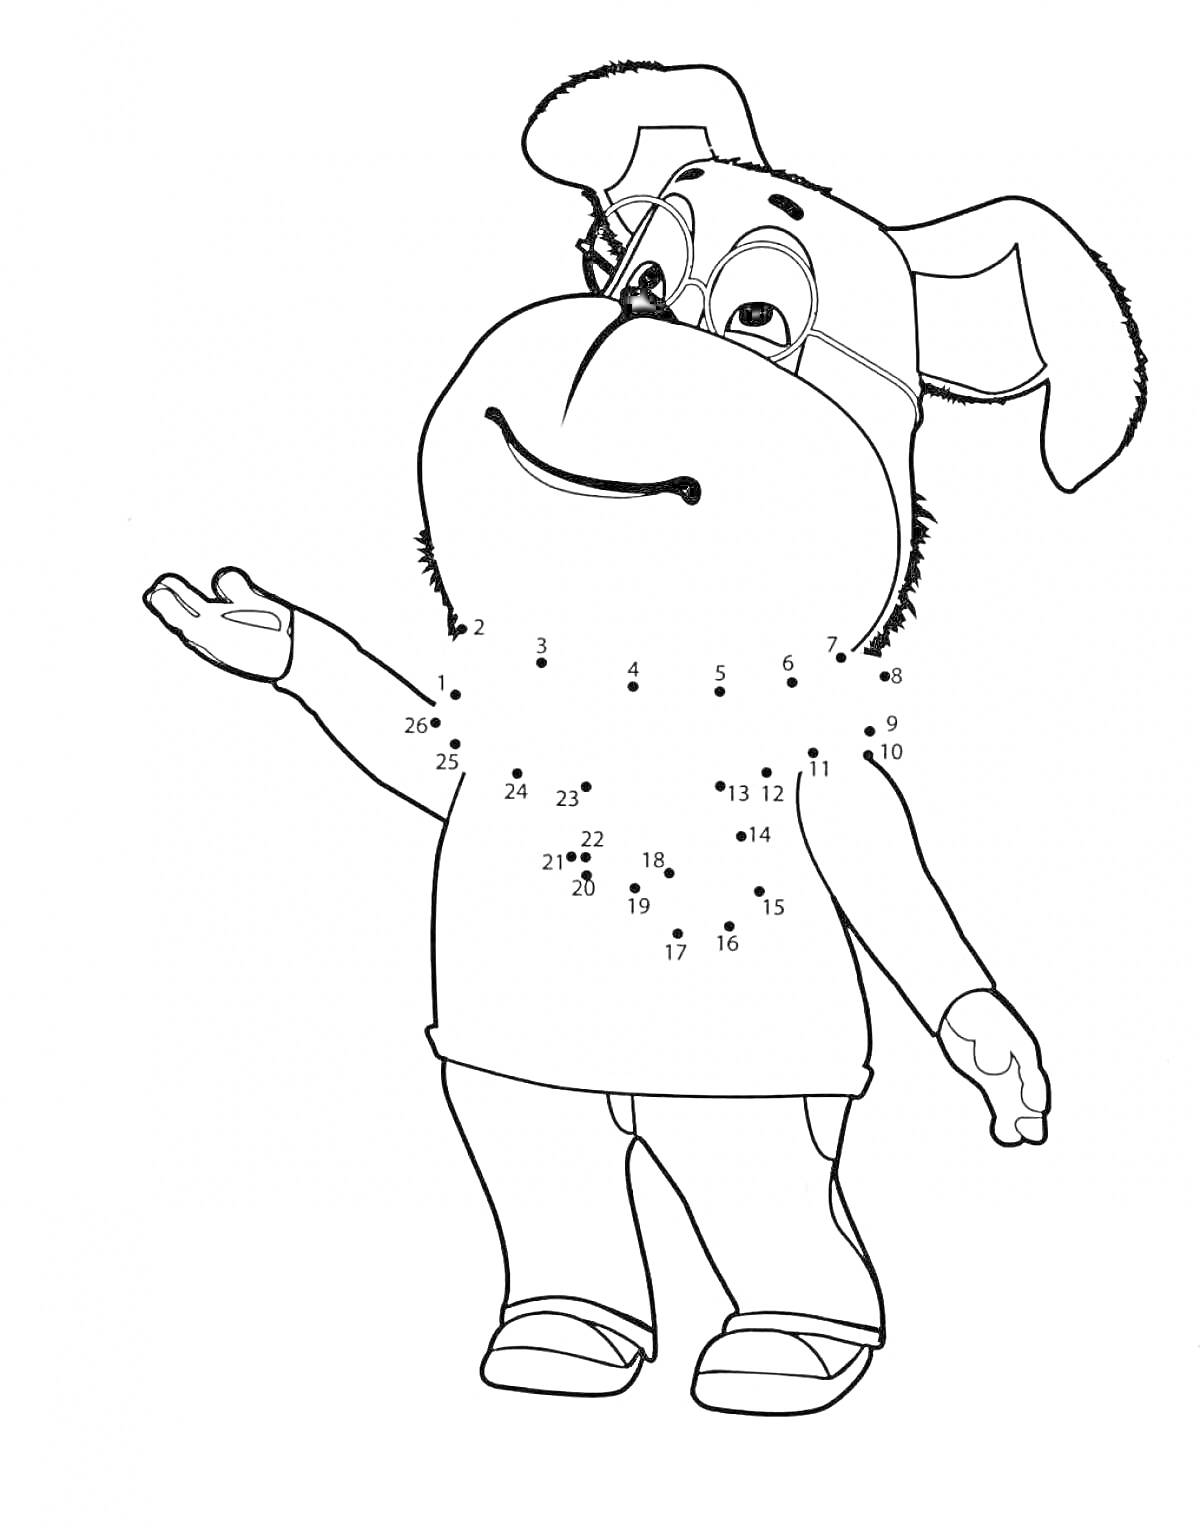 Барбоскины персонаж с точками для соединения, стоящий с поднятой рукой